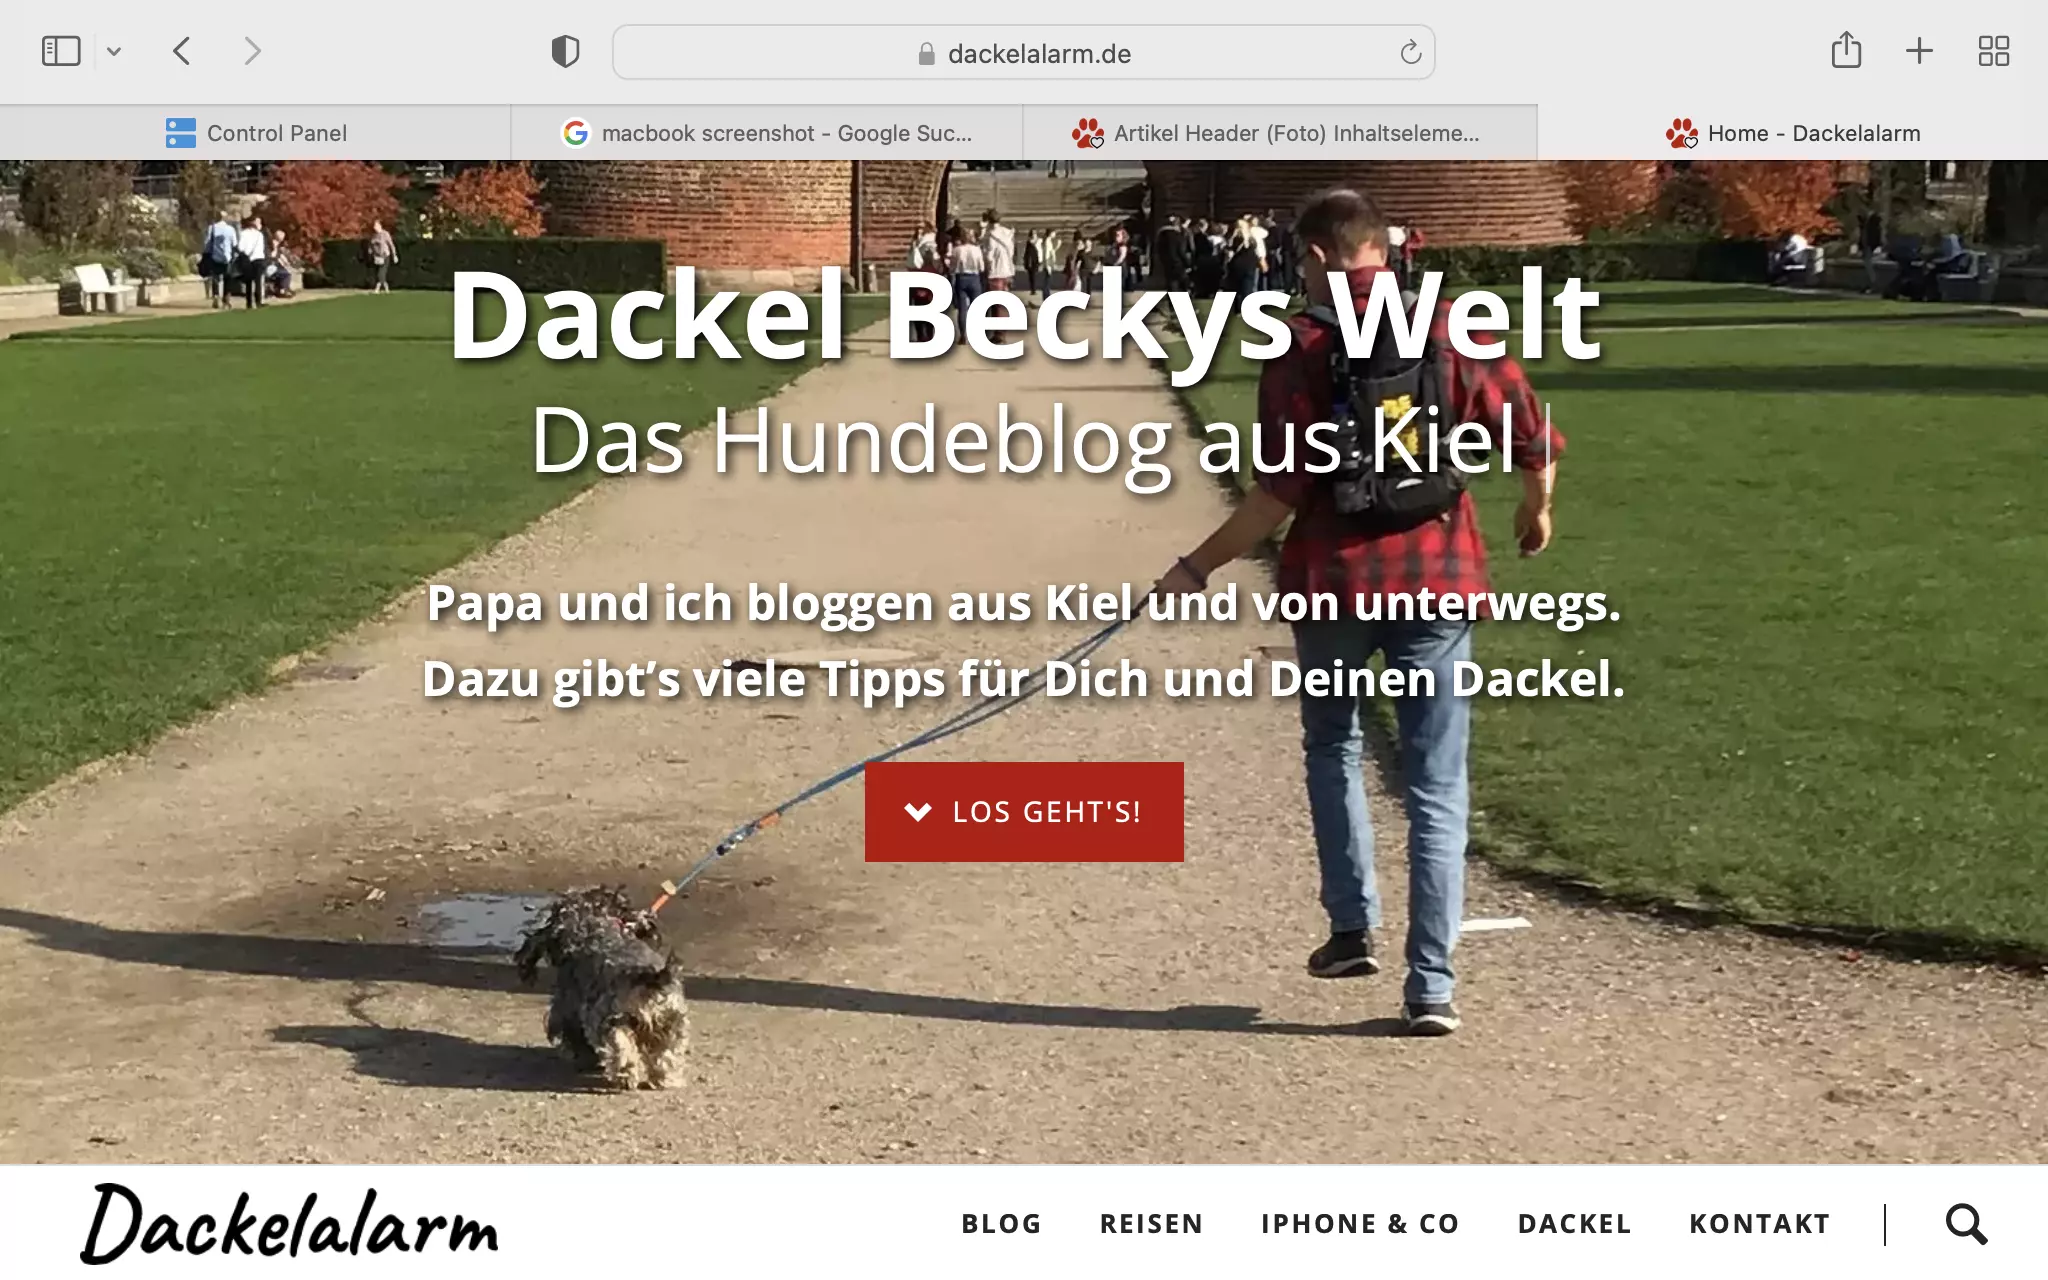 Auf dem Screenshot der Website dackelalarm.de laufen Dackel Becky und Edgar Selting auf das Holstentor in Lübeck zu. Der Screenshot steht symbolisch für den Aufbau der „Marke Dackel Becky“ durch Content Marketing.